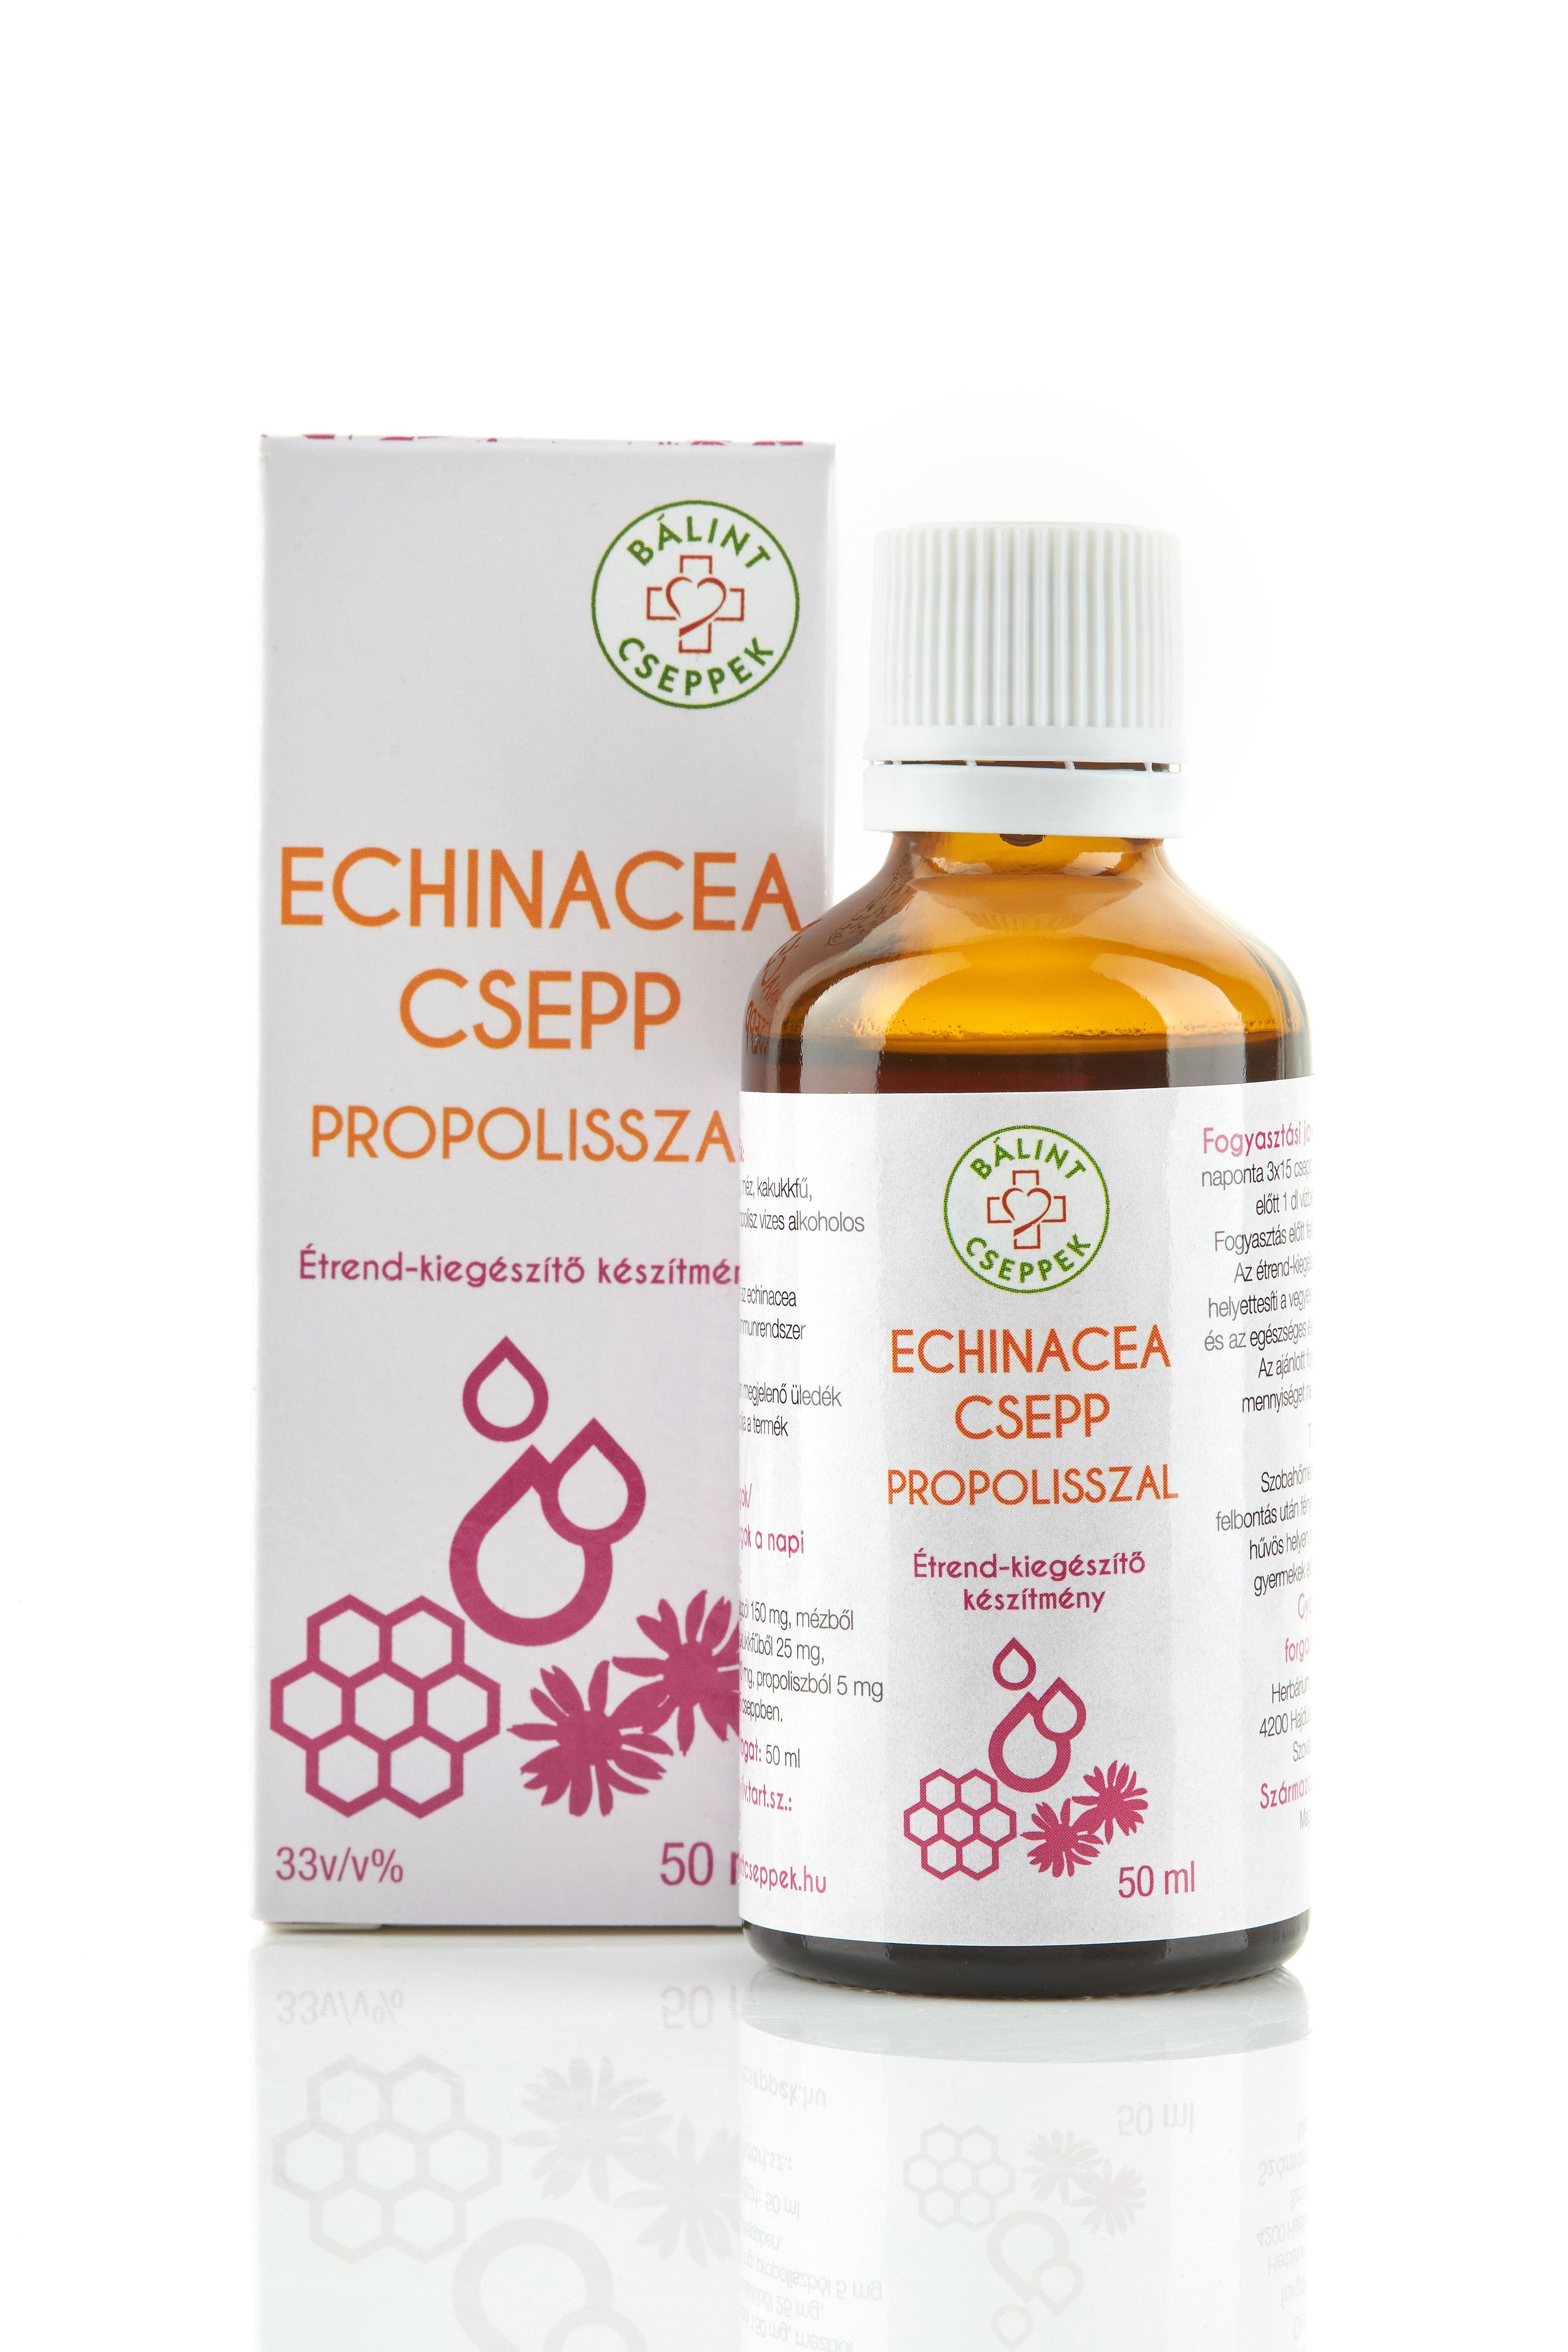 Bálint cseppek echinacea csepp propolisszal 50 ml